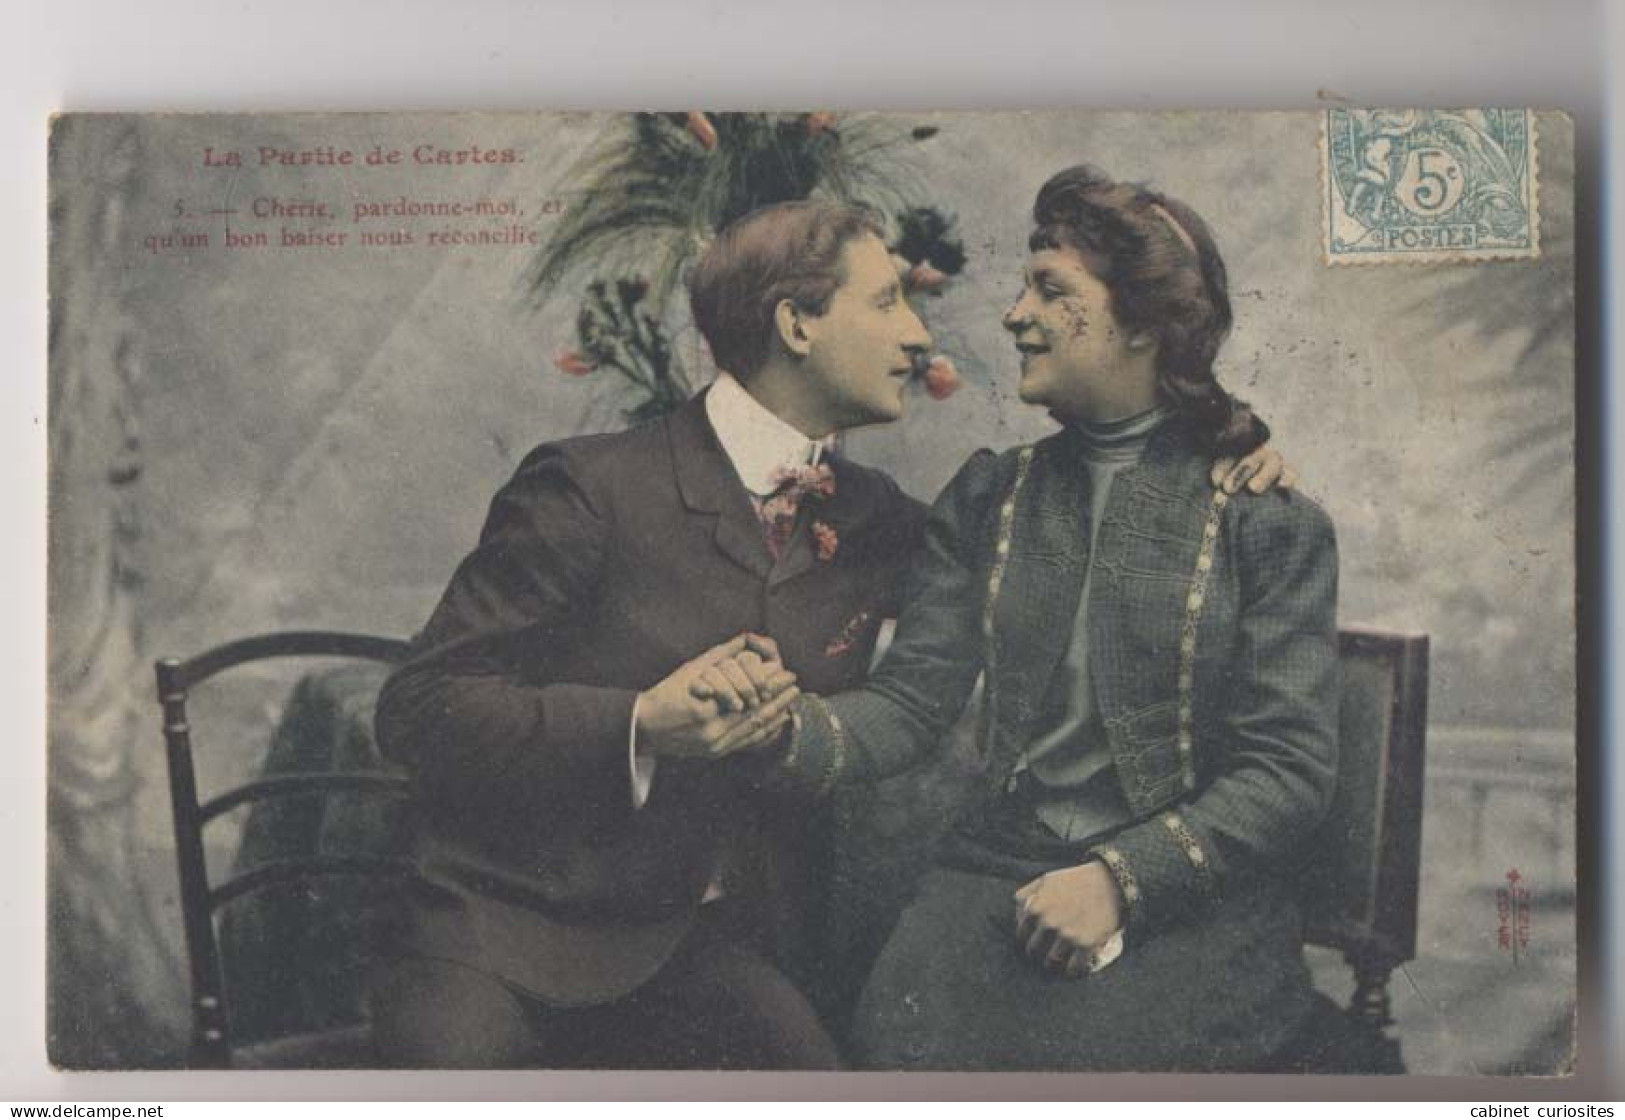 La Partie De Cartes  - 1908 - Chérie Pardonne Moi - Colorisée - Animée - Cartes à Jouer - Carte Da Gioco